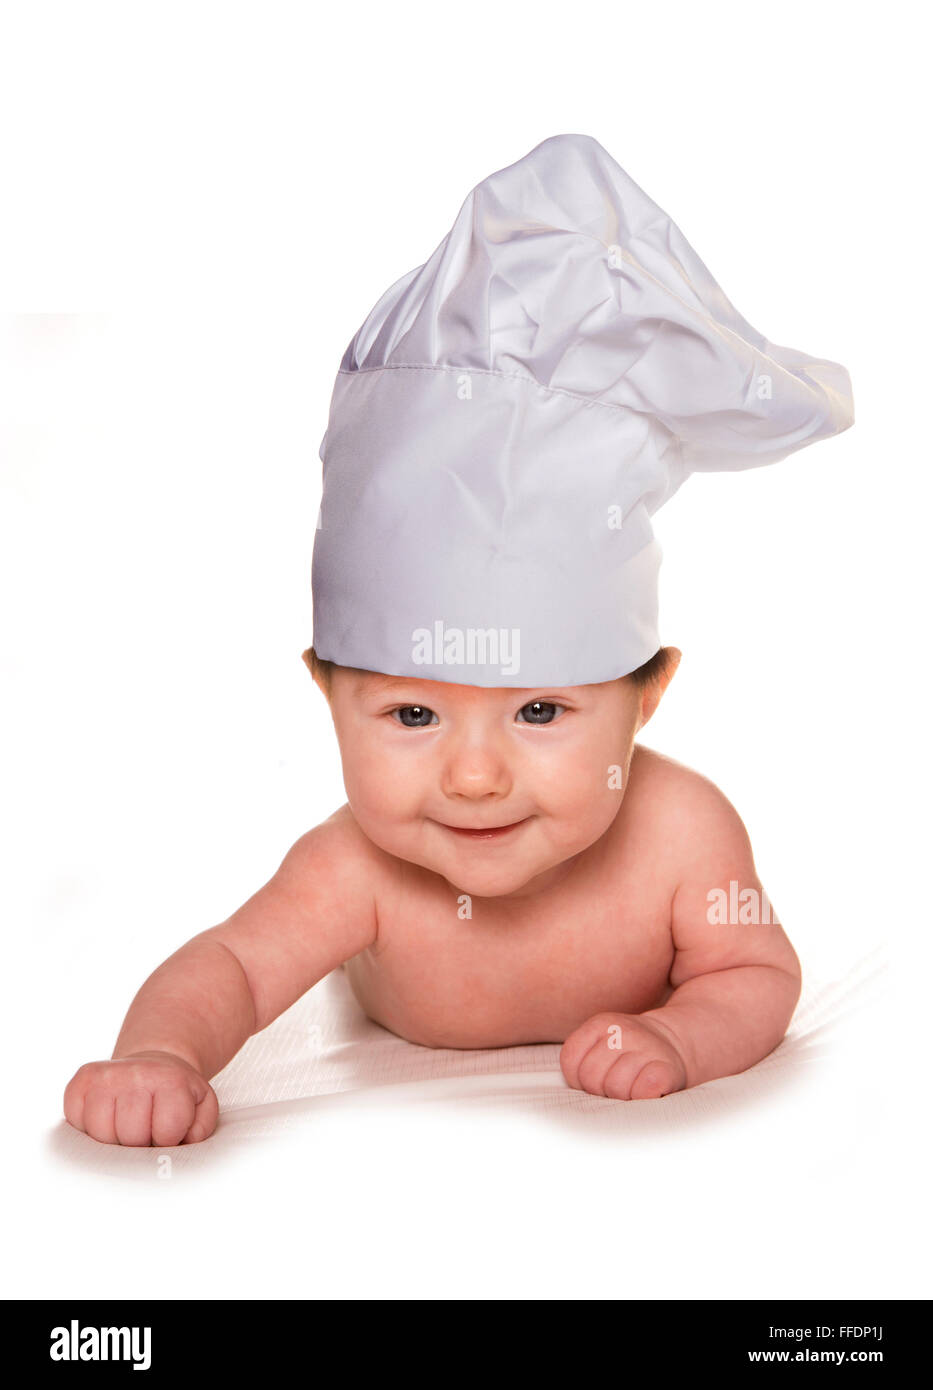 3 mese fa il bambino che indossa lo chef hat intaglio Foto Stock